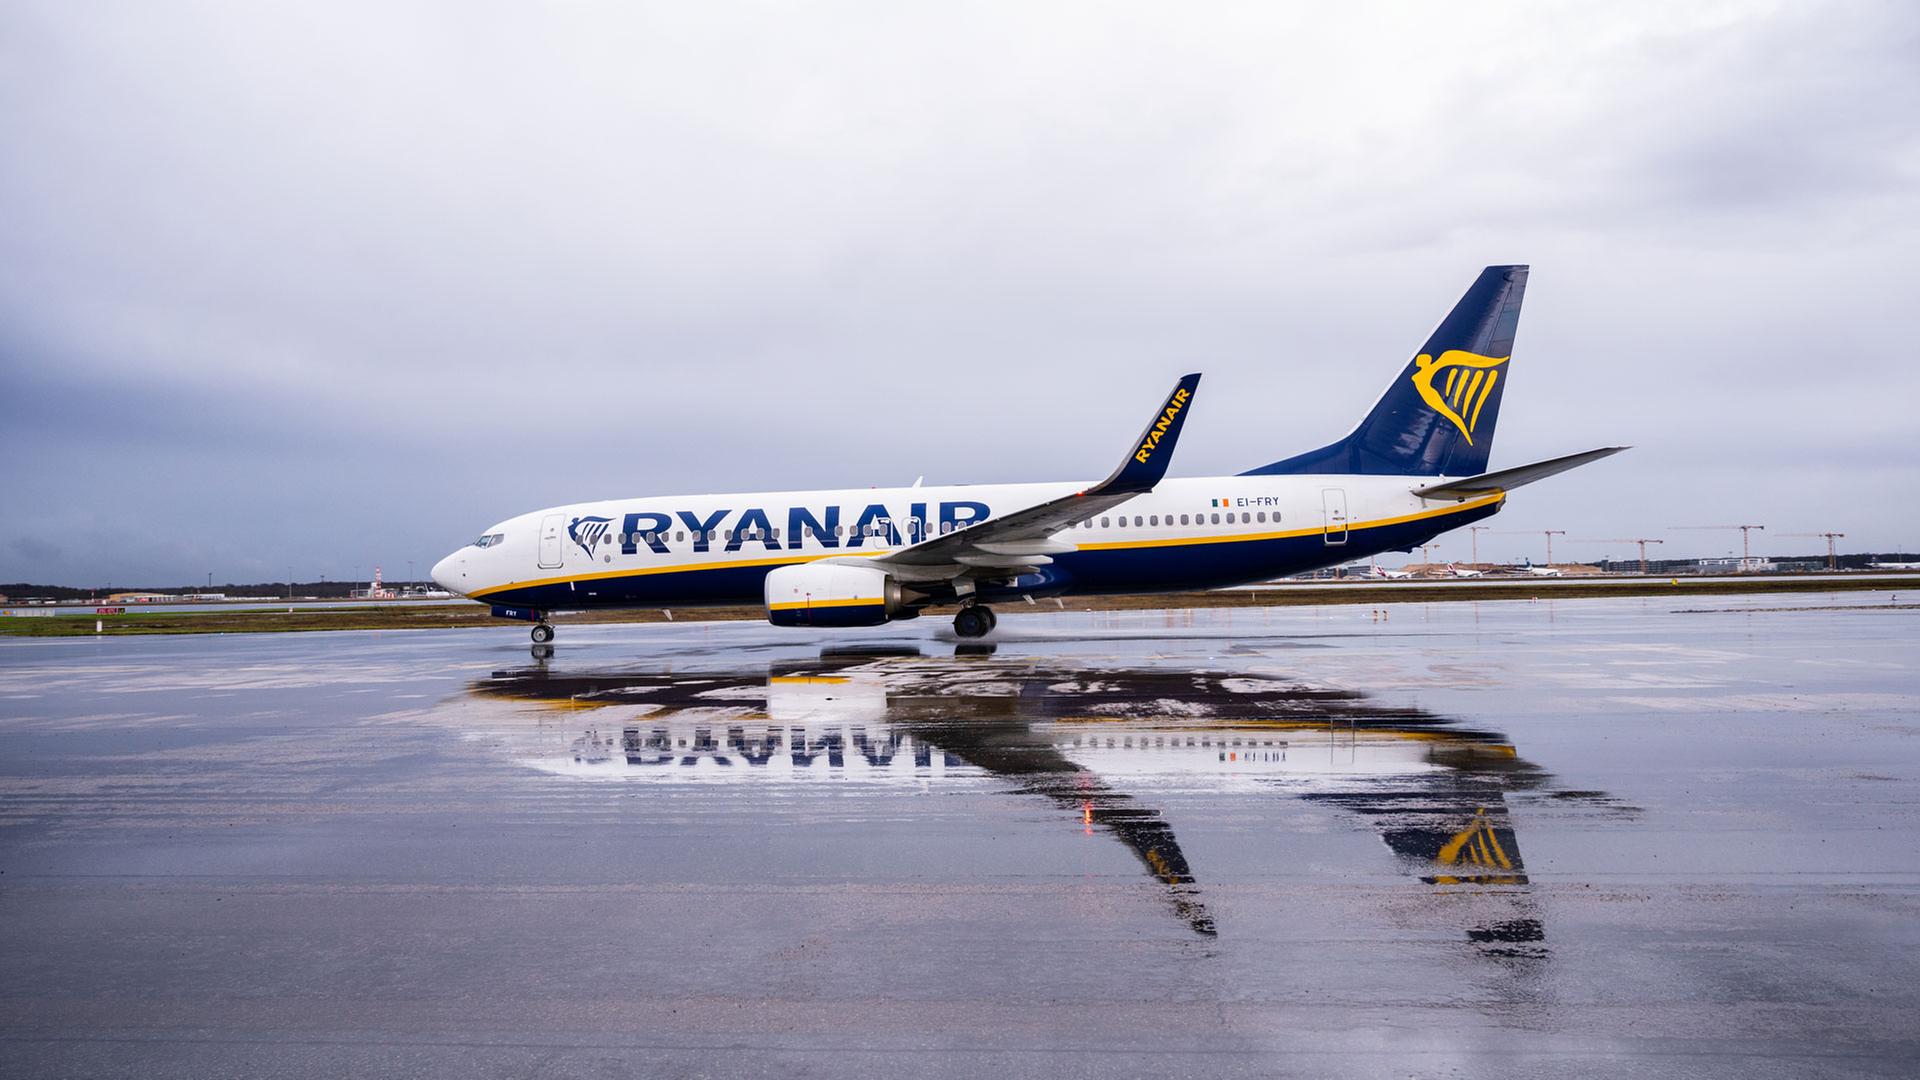 Tanie linie lotnicze odlatują z lotniska: Ryanair startuje we Frankfurcie |  hessenschau.de